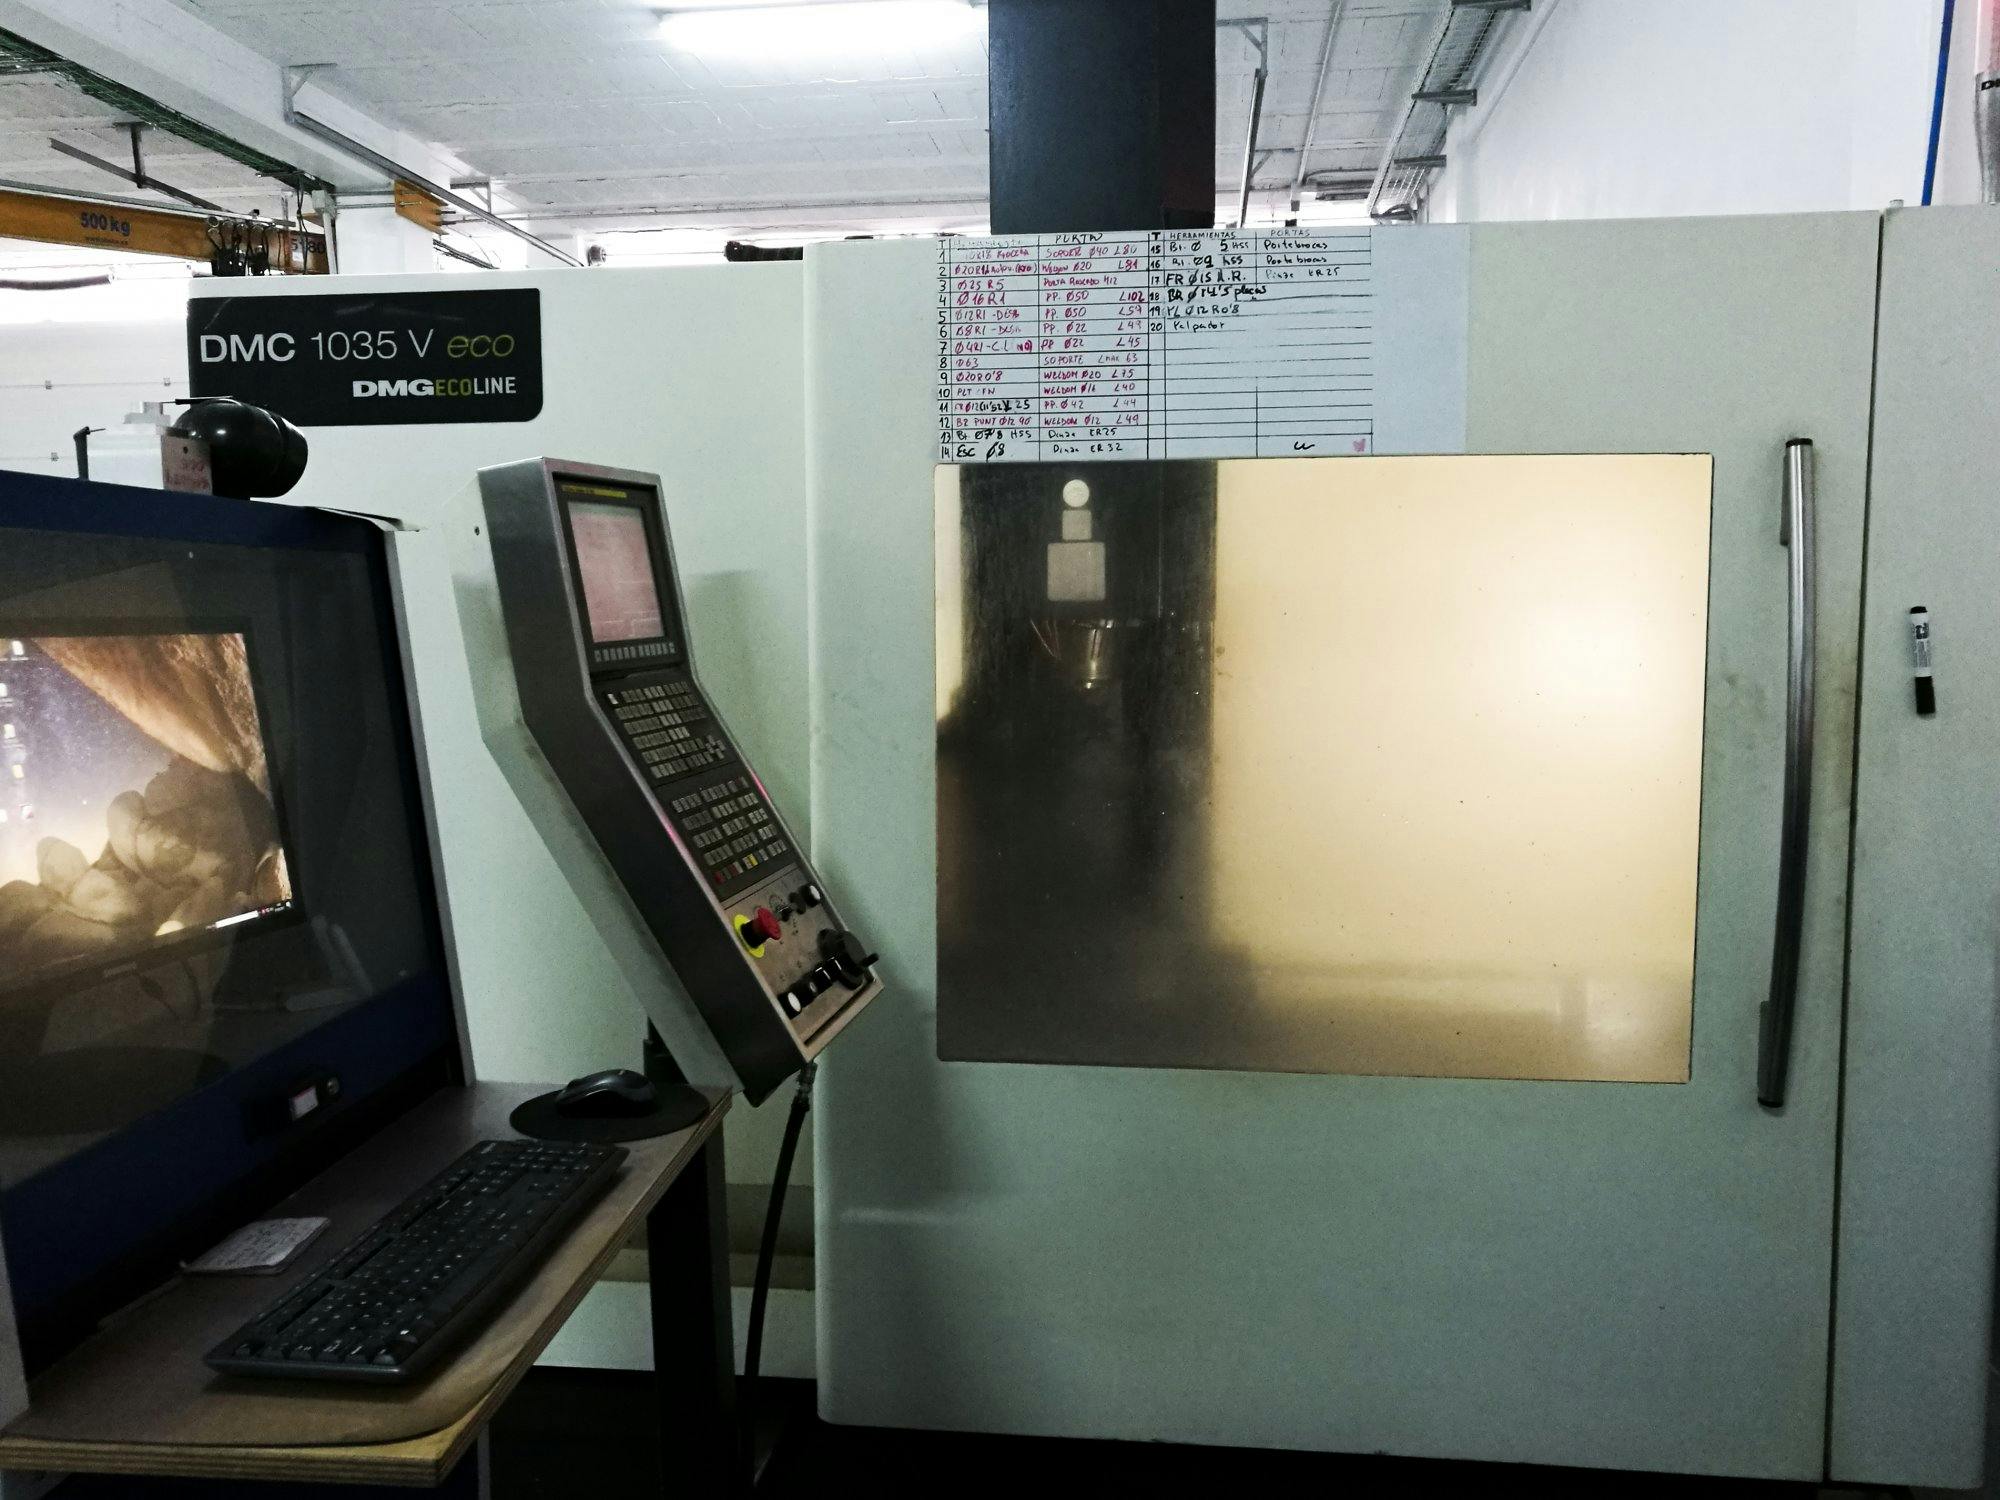 Vista frontal de la máquina DMG DMC 1035 V eco